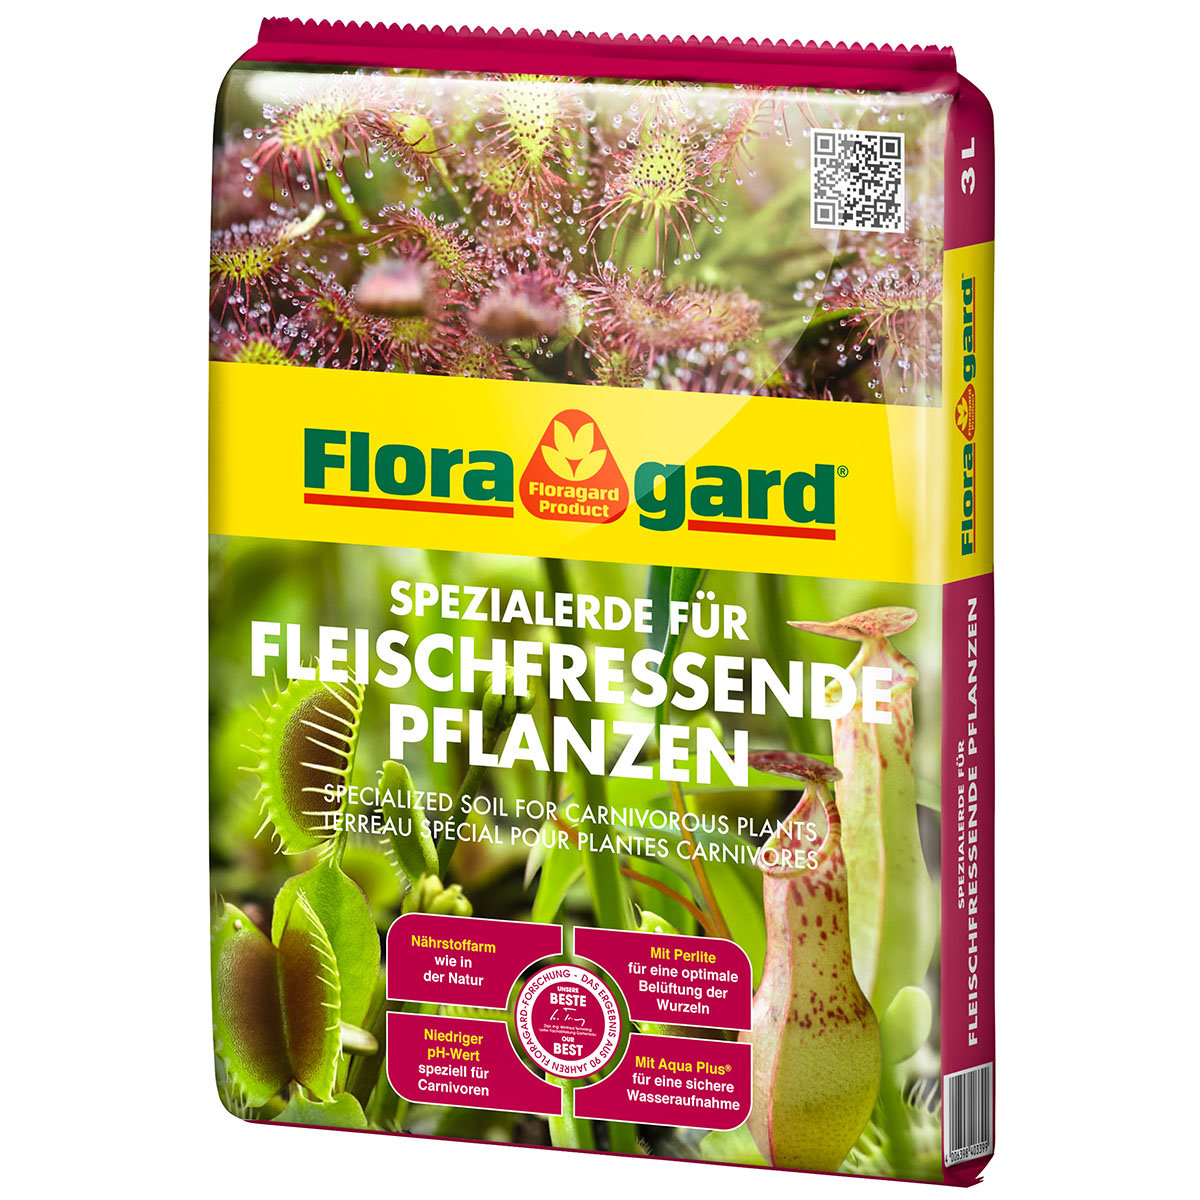 Spezialerde für Fleischfressende Pflanzen, 3 Liter
